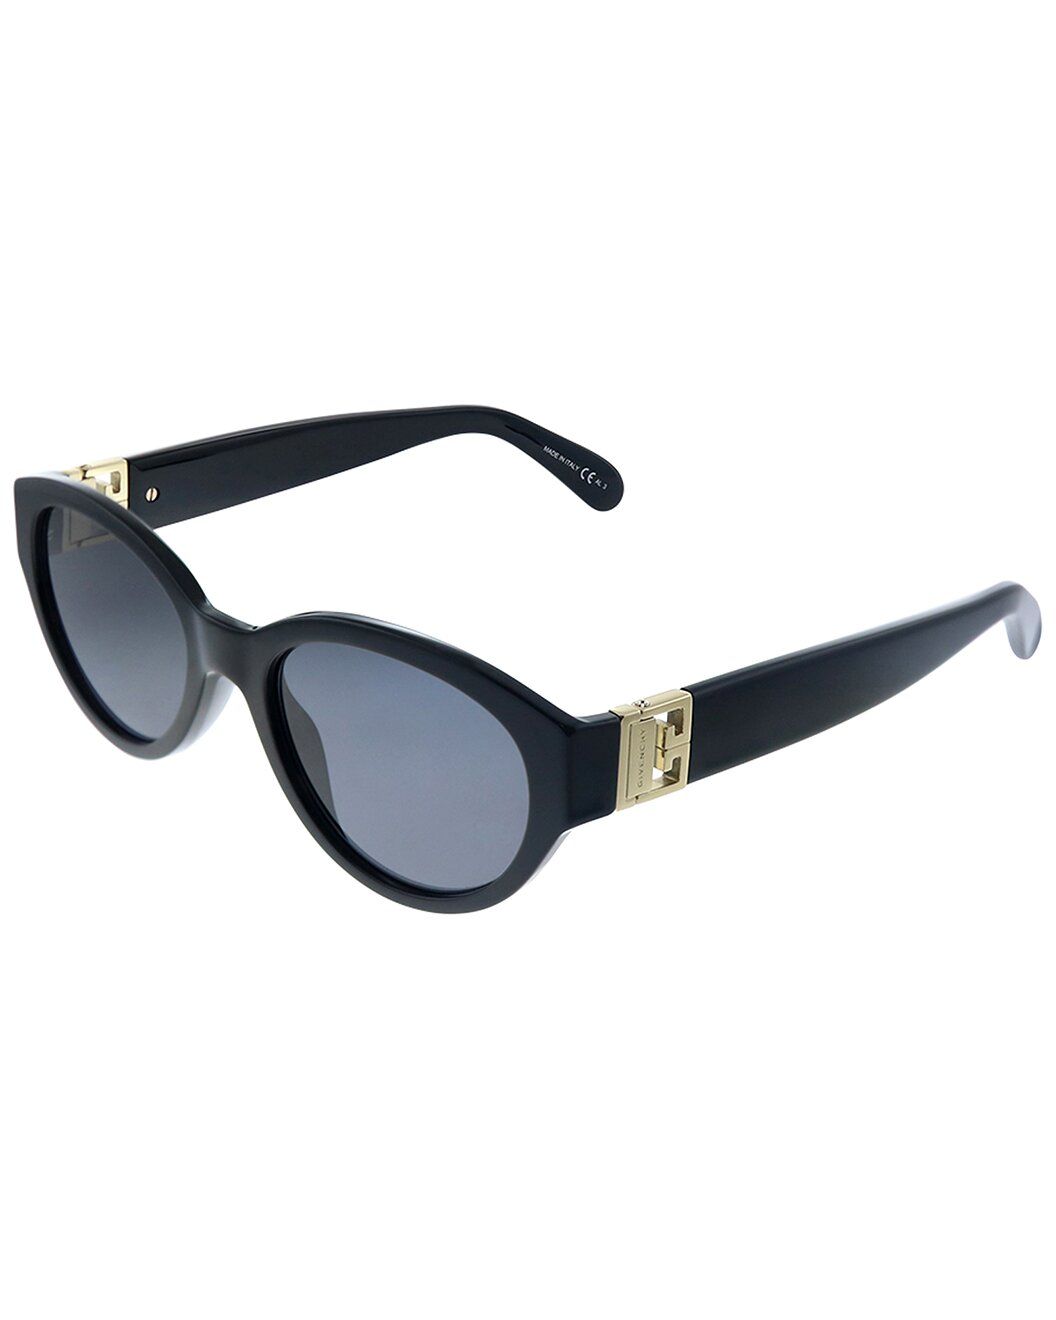 Givenchy Women's GV7143 52mm Sunglasses | Ruelala